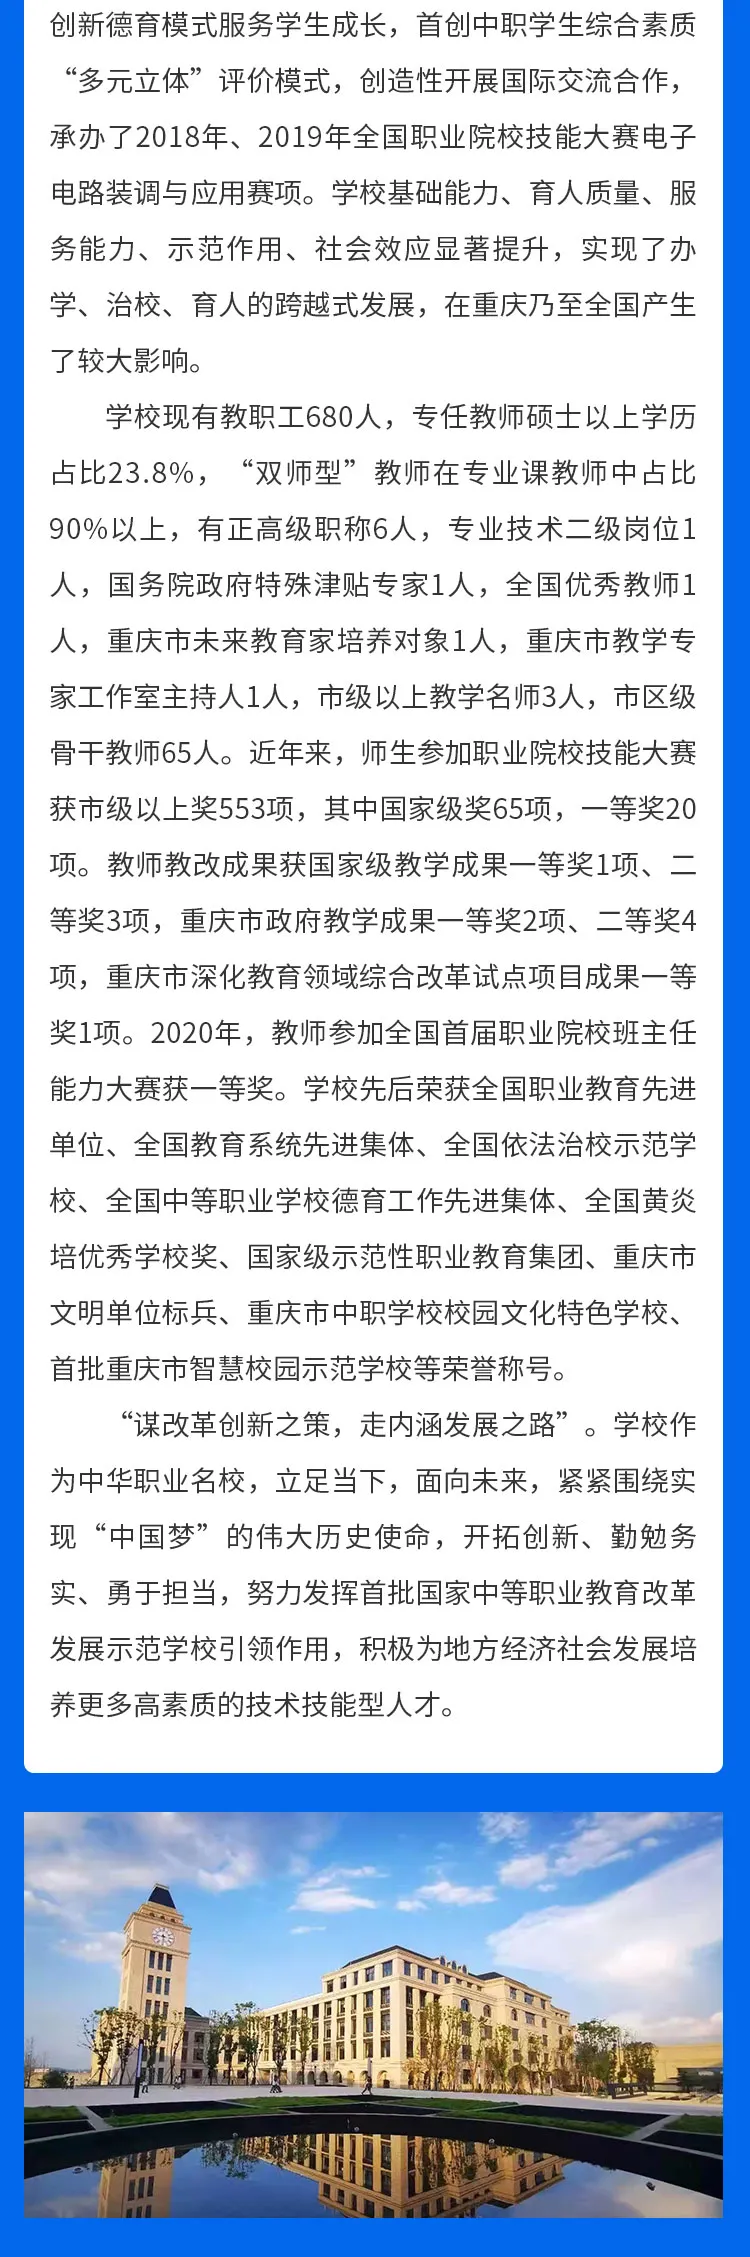 重庆市渝北职业教育中心2022年(春)招生简章